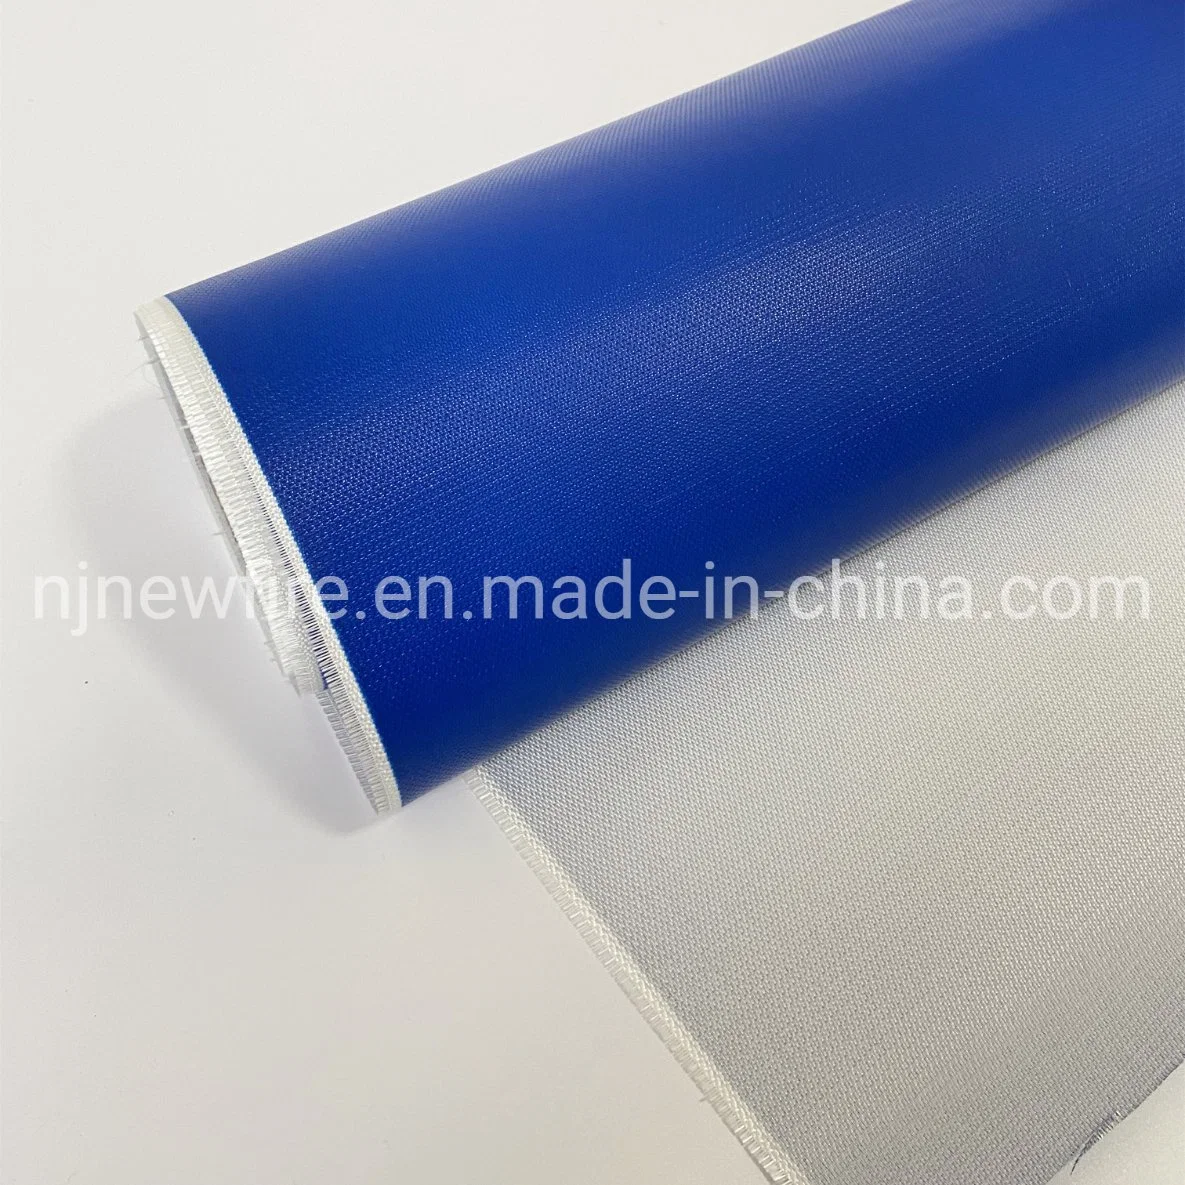 Tissu en fibre de verre enduit de caoutchouc de silicone résistant aux produits chimiques et à la chaleur, ignifuge, en verre E/C.